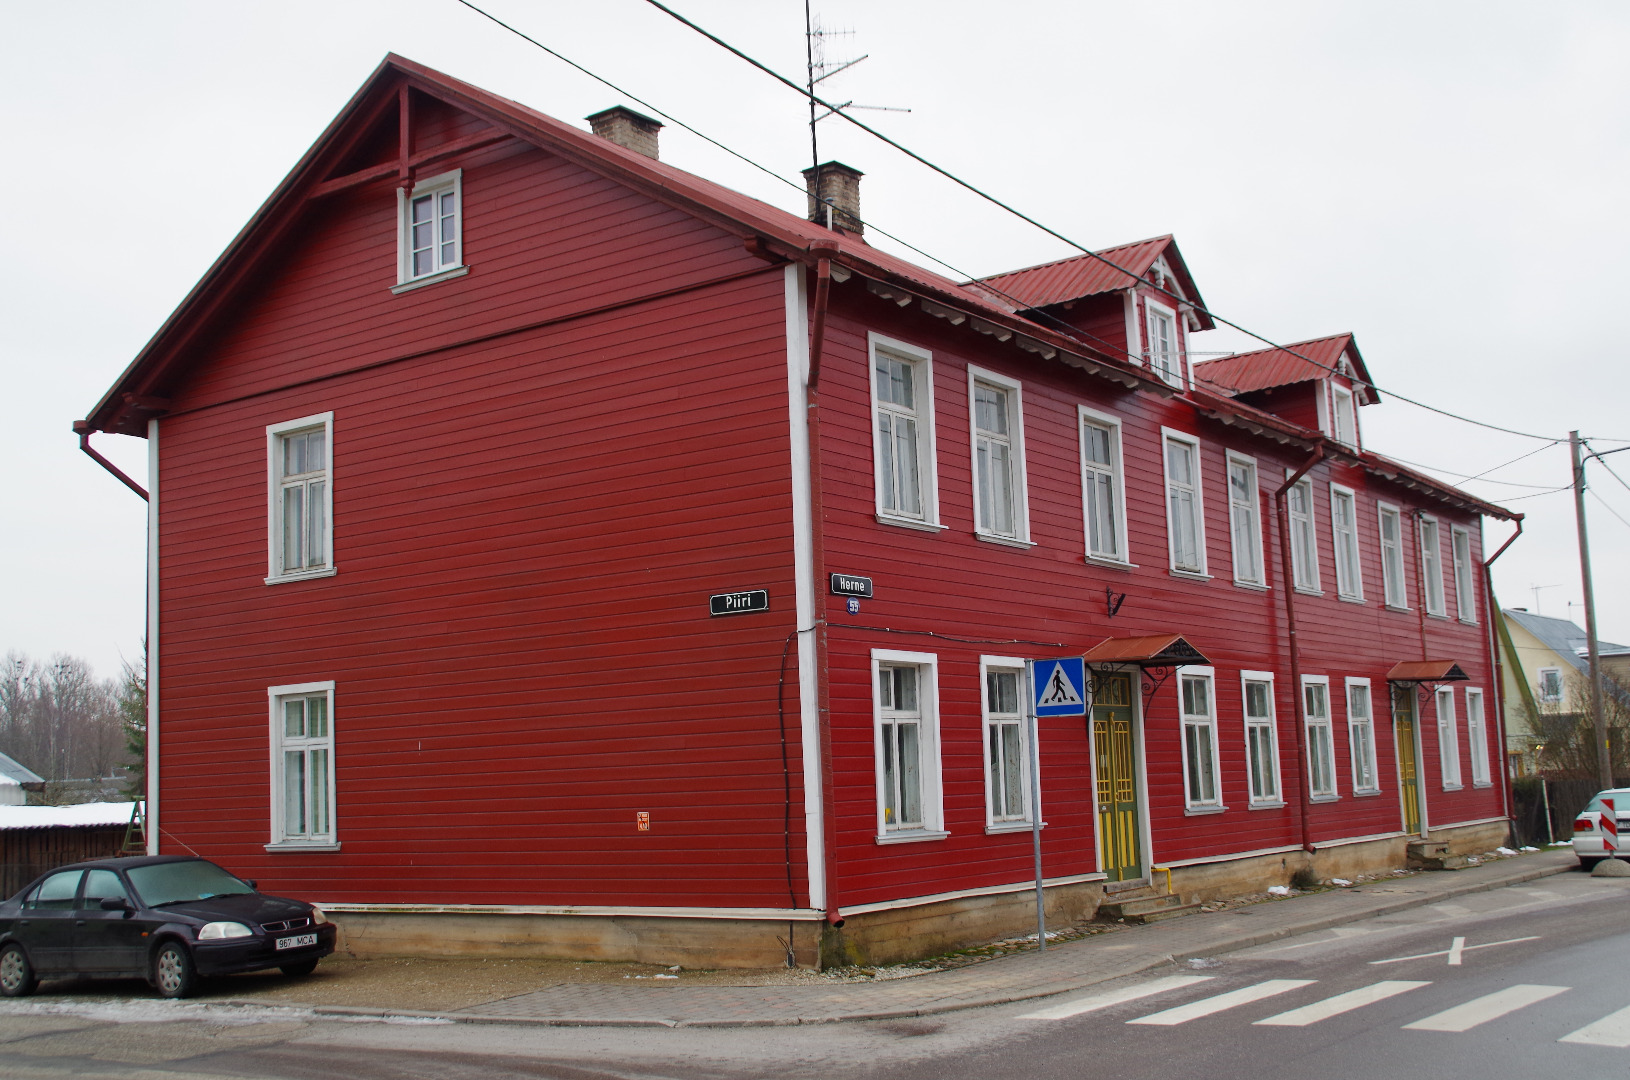 Tartu, Herne 55, built around 1890. rephoto